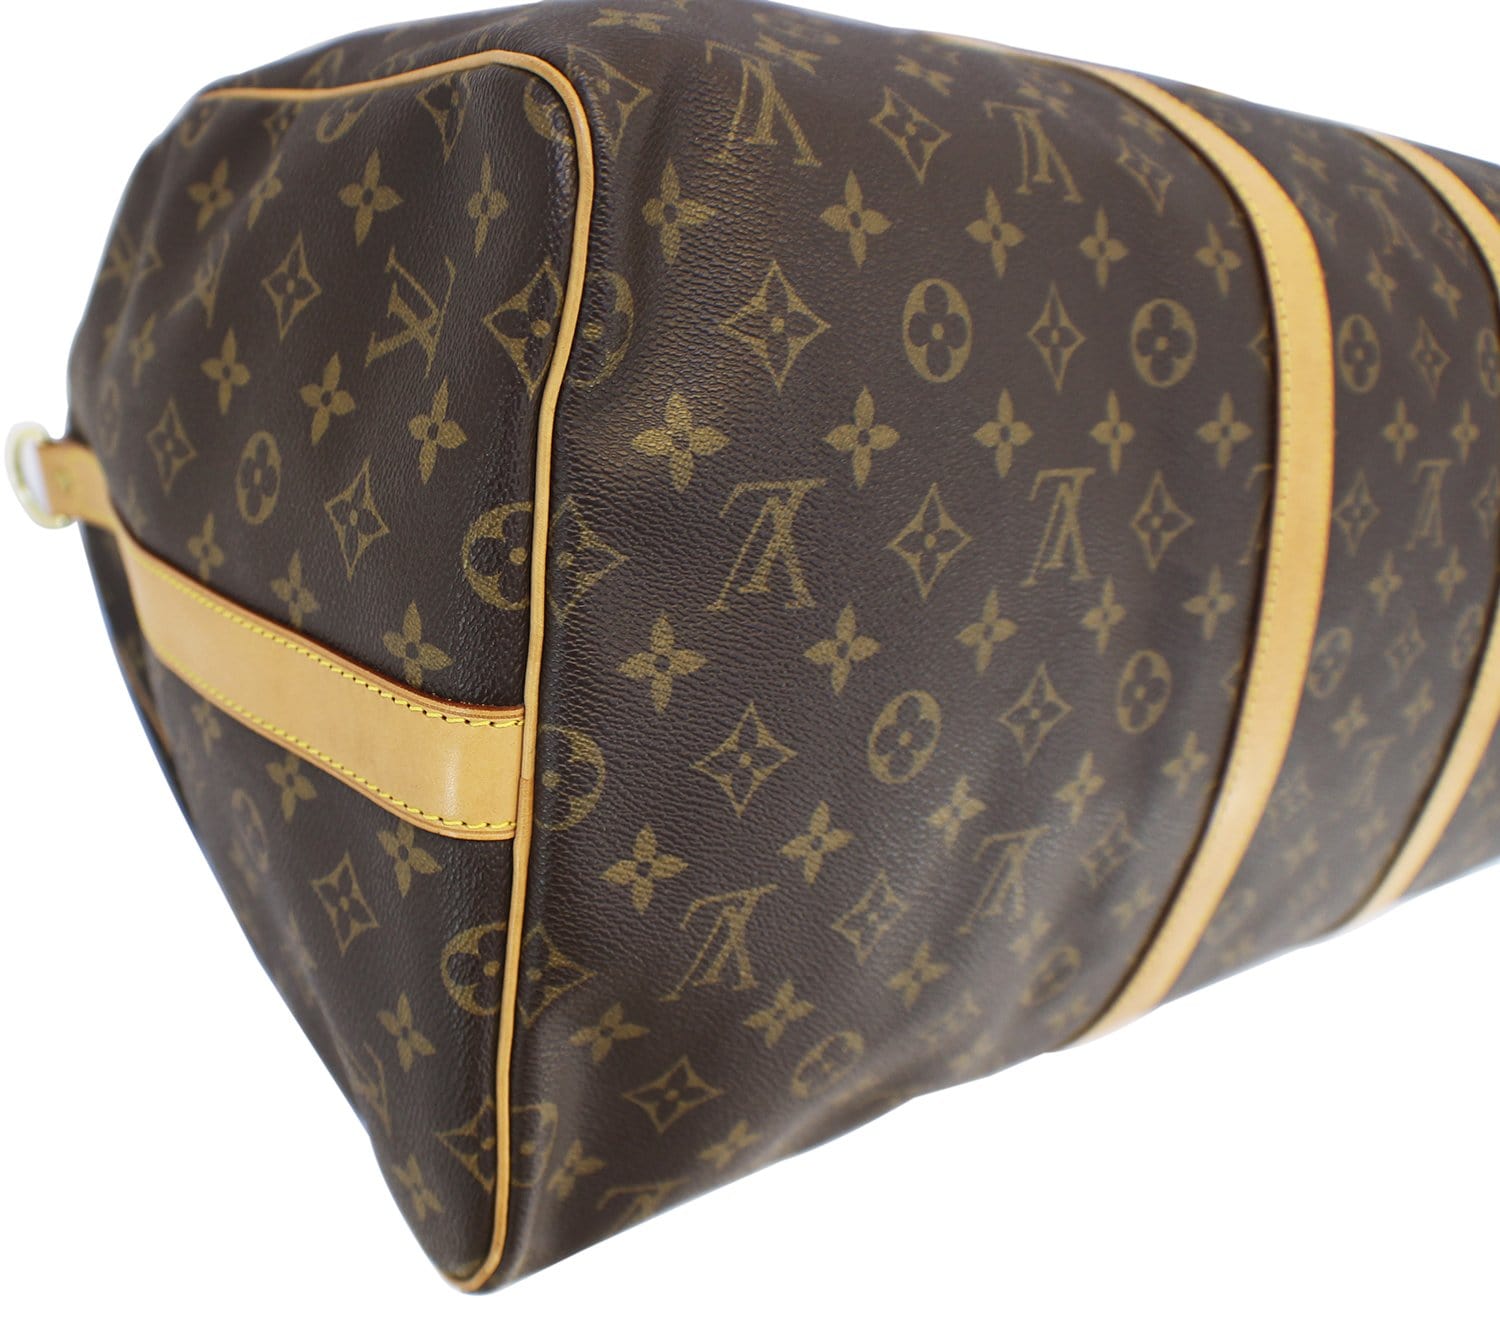 Louis Vuitton Keepall Bandoulière 55 Boston Bag(Brown)